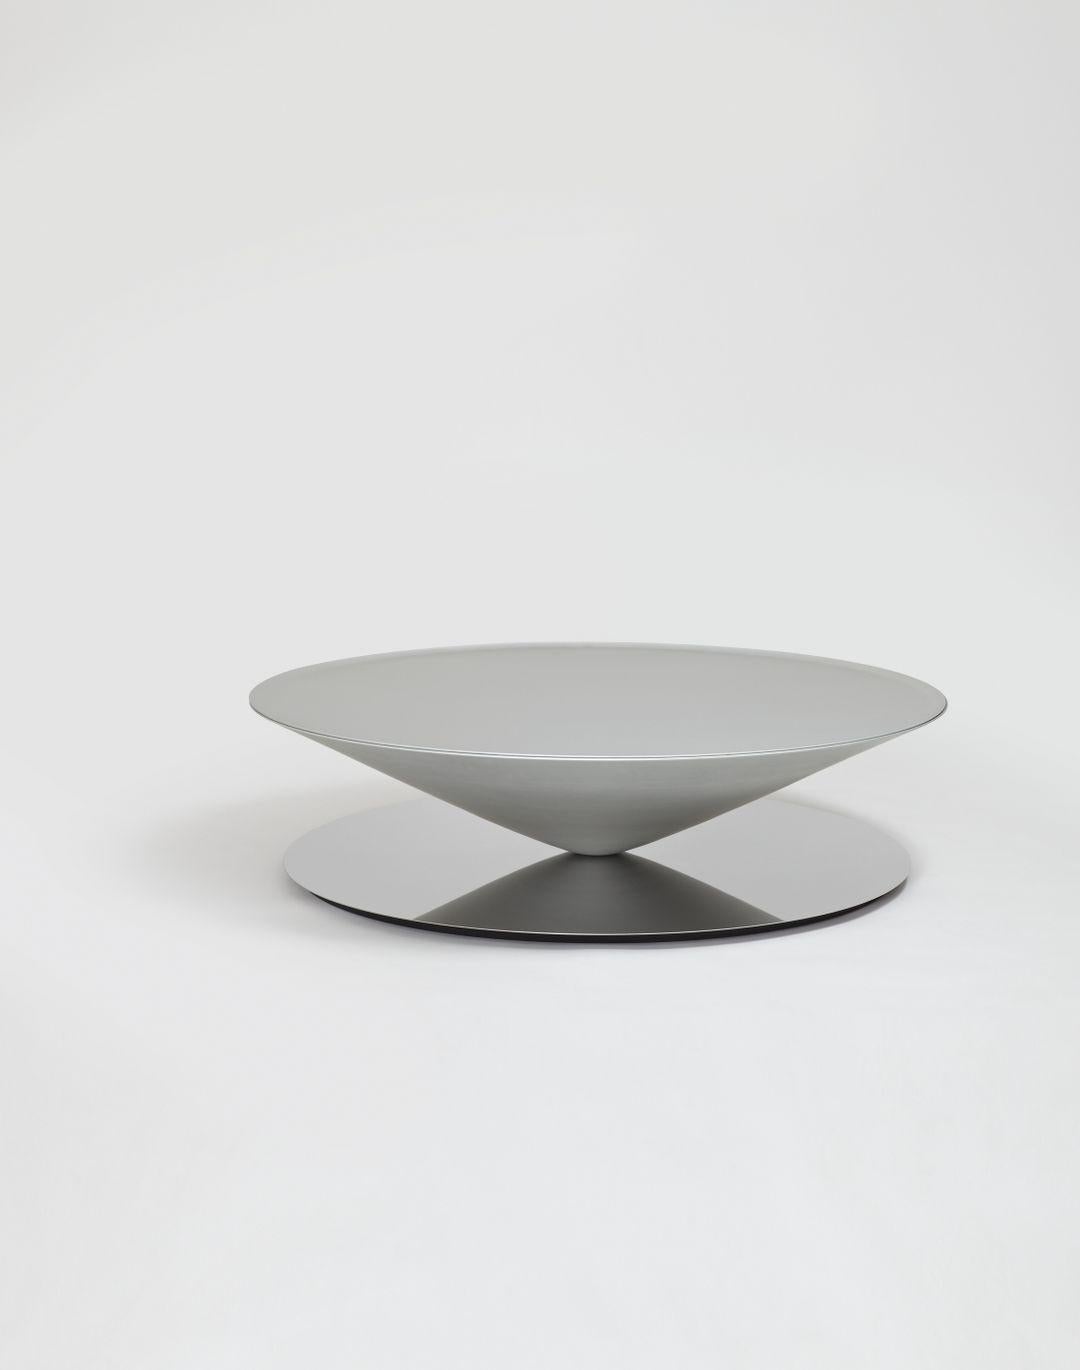 Float est une table basse sculpturale qui défie les sens et la perception. Un cône massif en métal flotte apparemment au-dessus d'une base en acier poli miroir. Le design géométrique est adouci par des détails raffinés tels que la lèvre biseautée